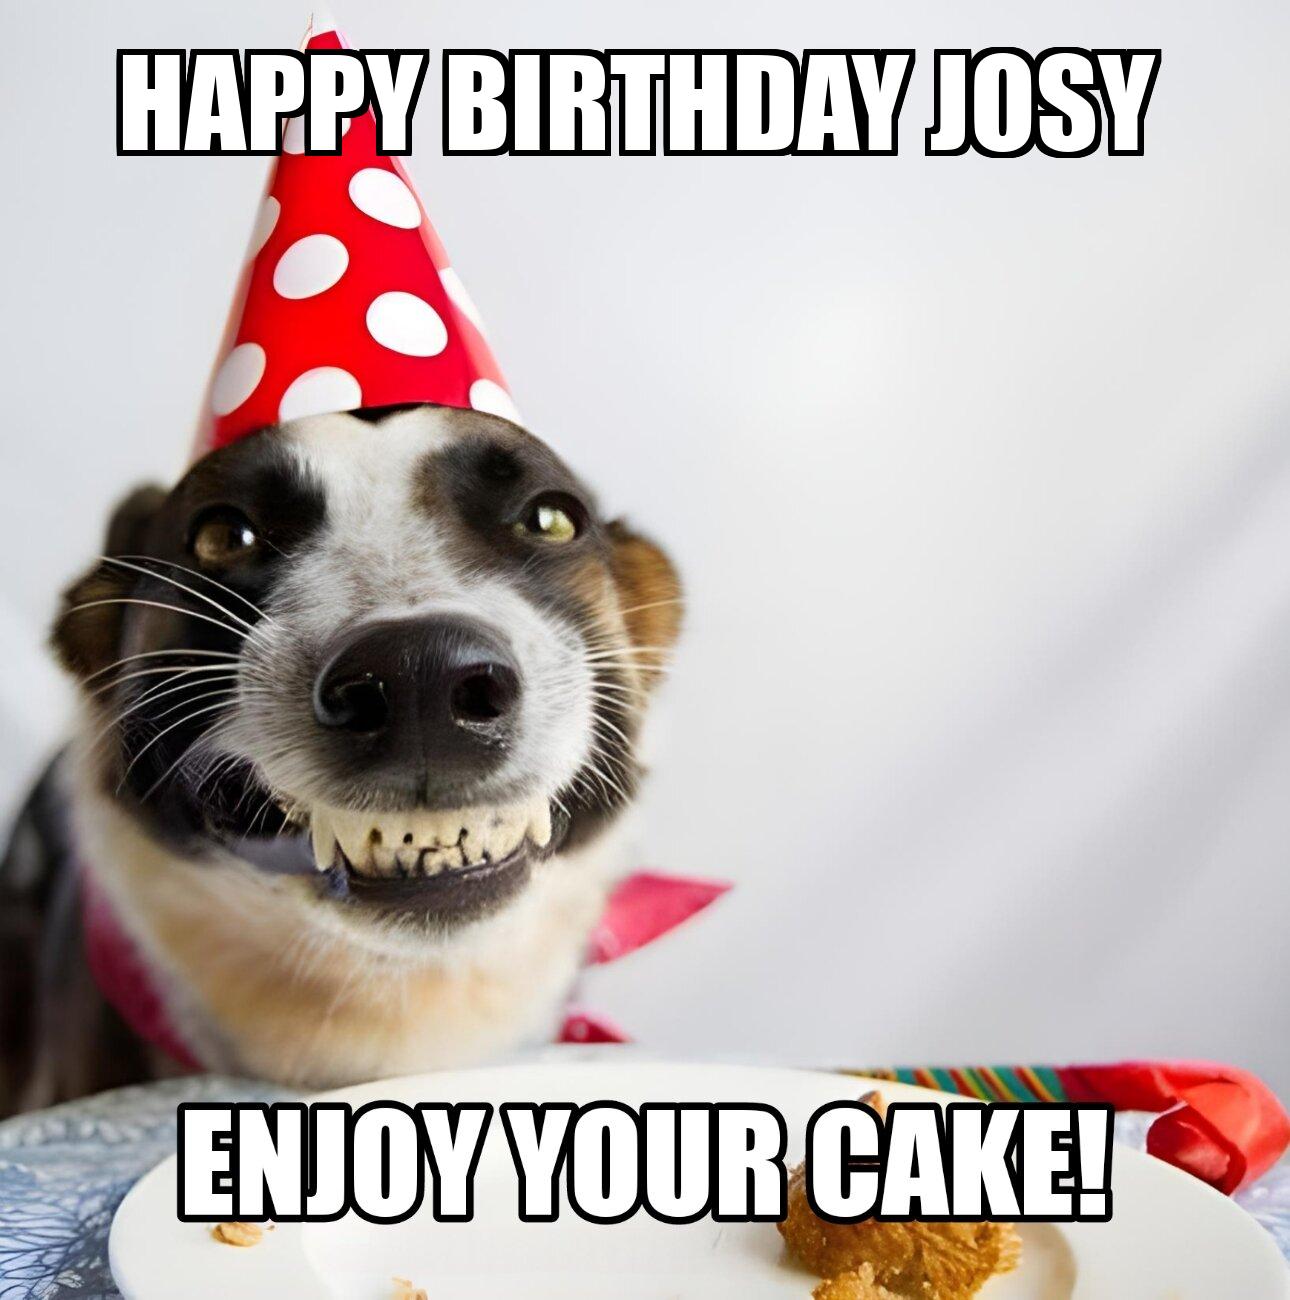 Happy Birthday Josy Enjoy Your Cake Dog Meme